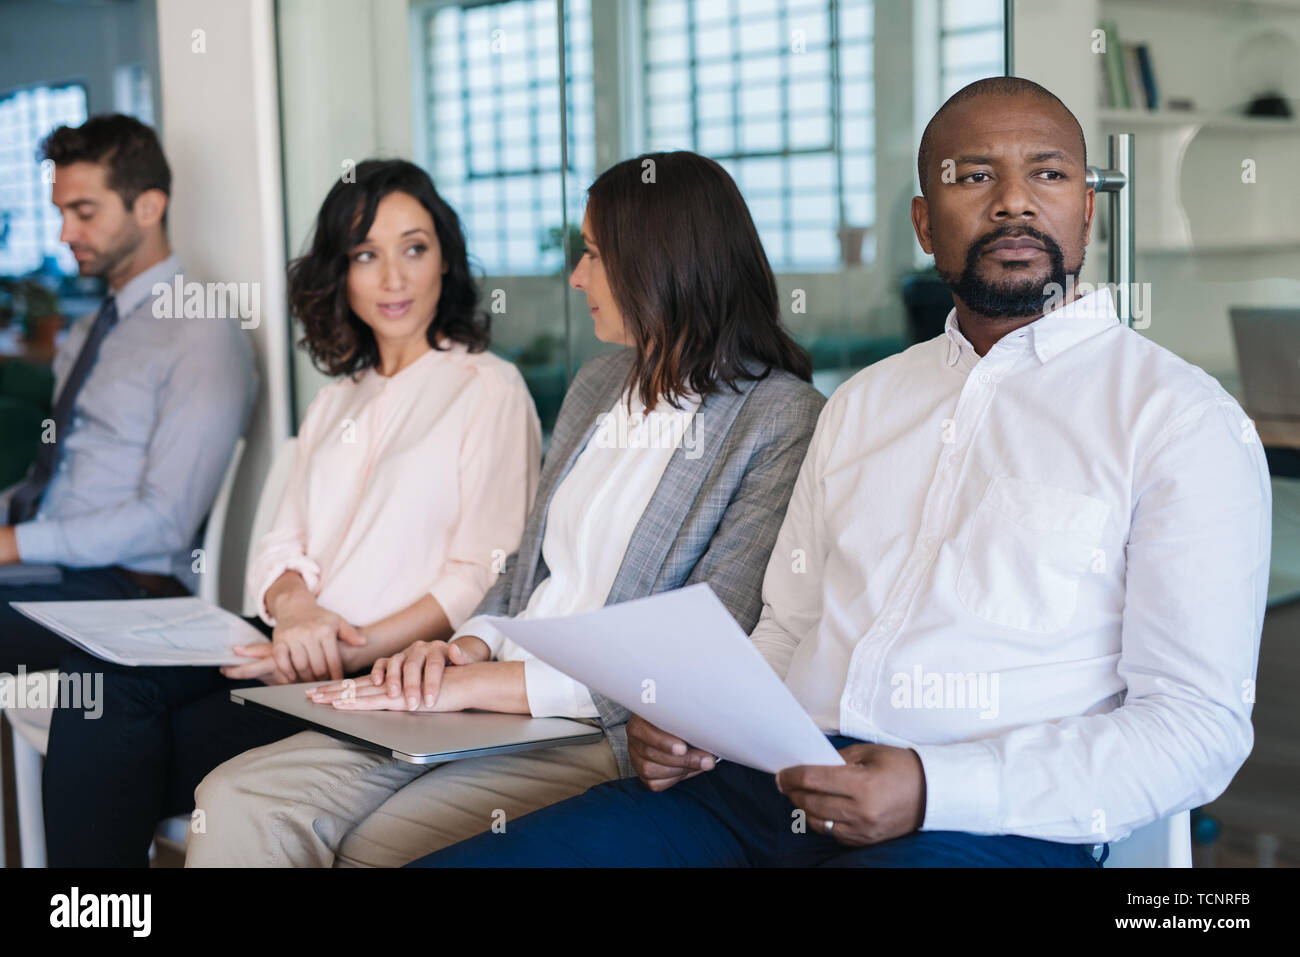 African American demandeur d'emploi tenant son cv et se préparer mentalement pour son entrevue lors d'un entretien avec un groupe d'autres personnes interviewées Banque D'Images